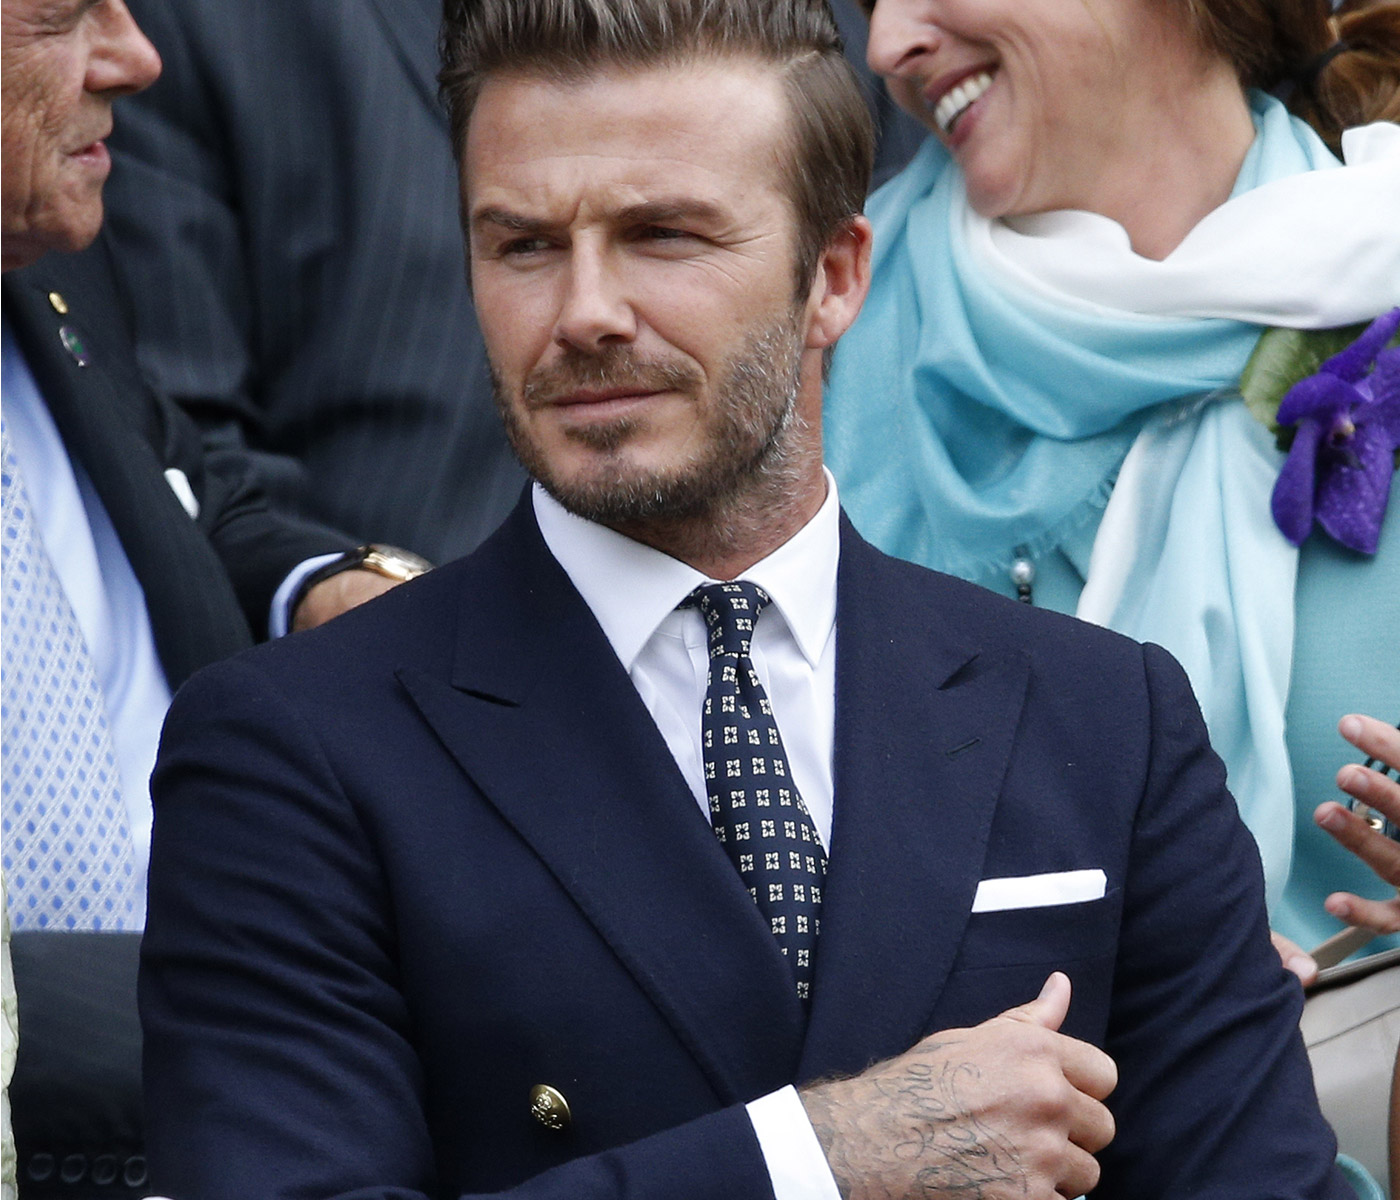                             David Beckham wearing Polo Ralph Lauren at Wimbledon in 2014